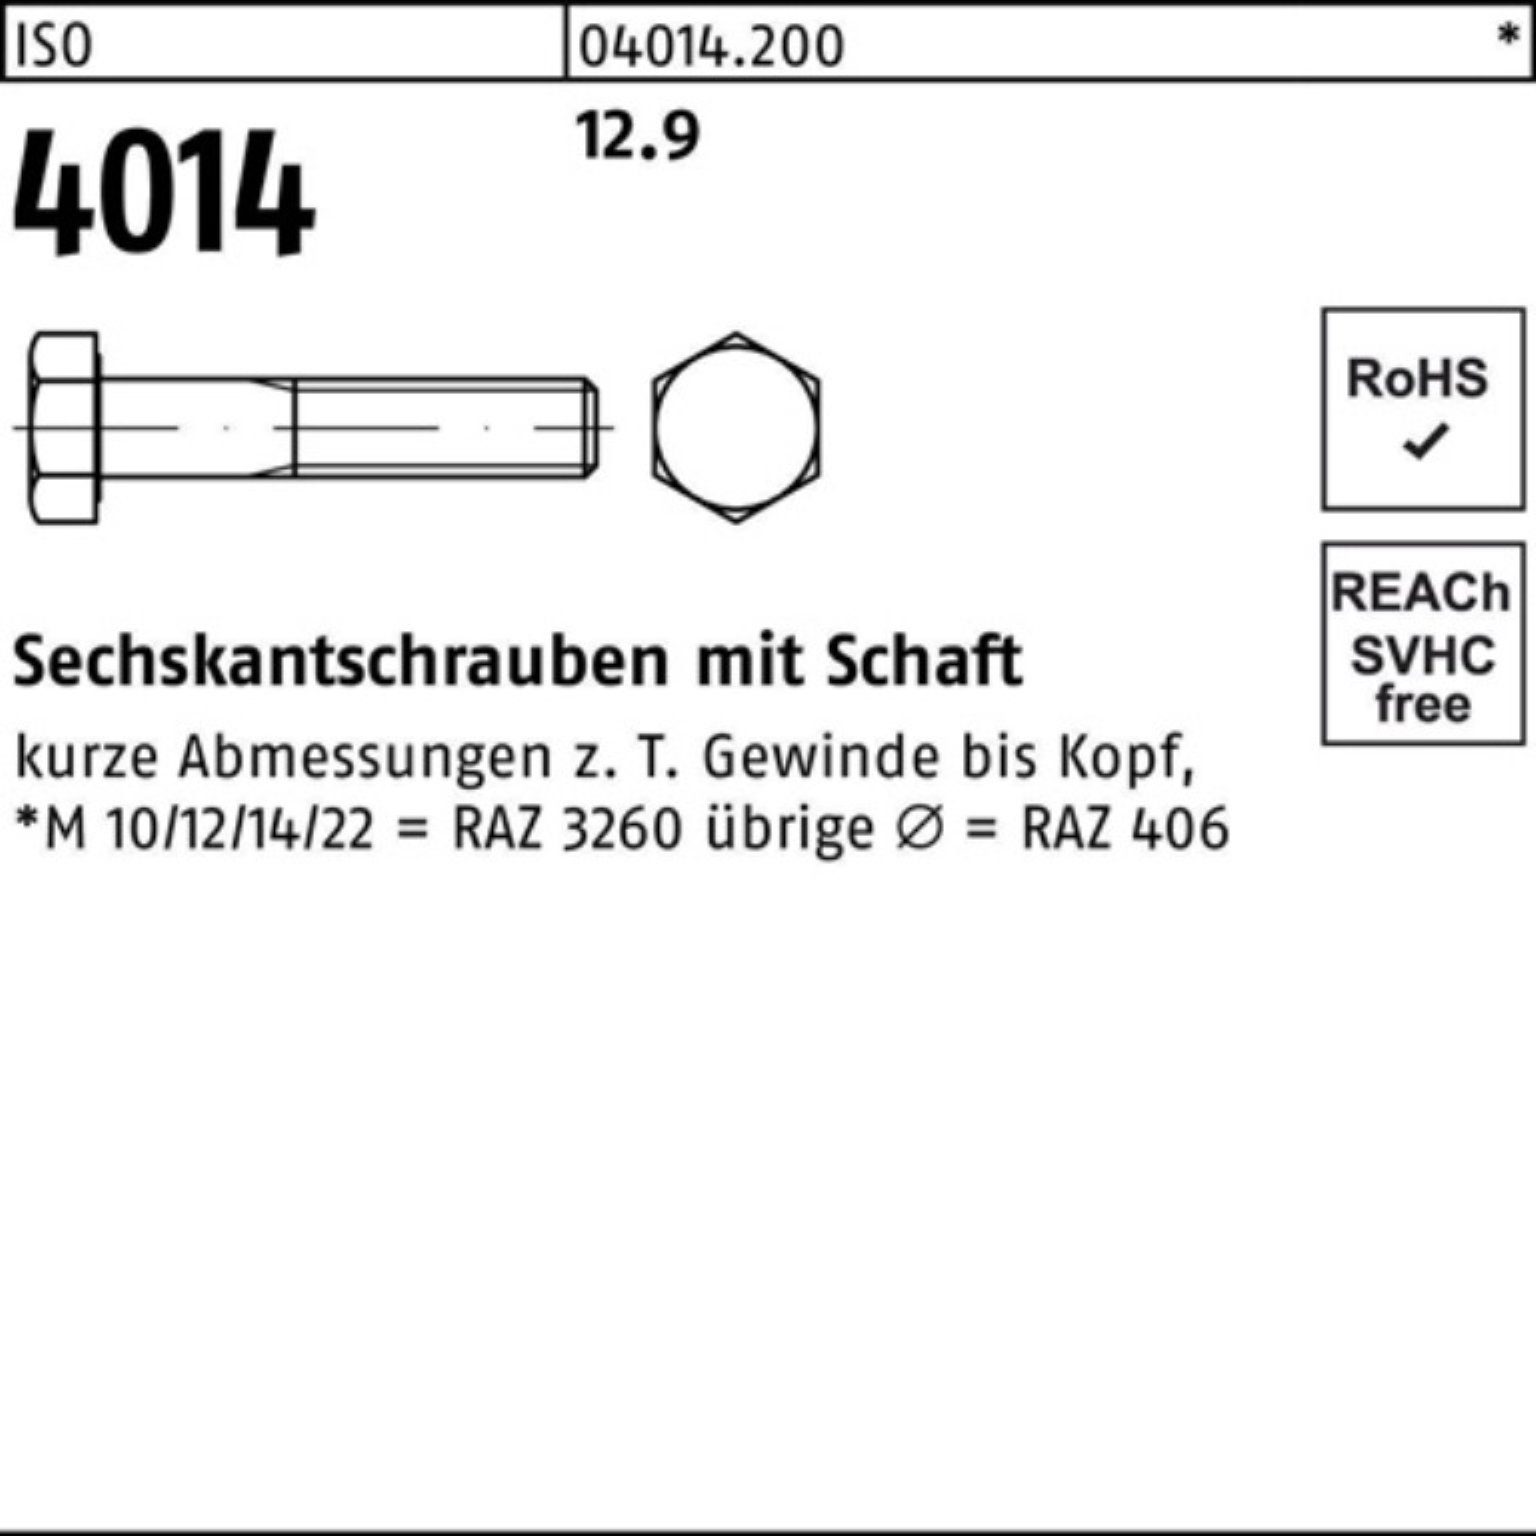 100er Bufab I ISO Sechskantschraube 4014 M24x Schaft 10 12.9 150 Pack Stück Sechskantschraube